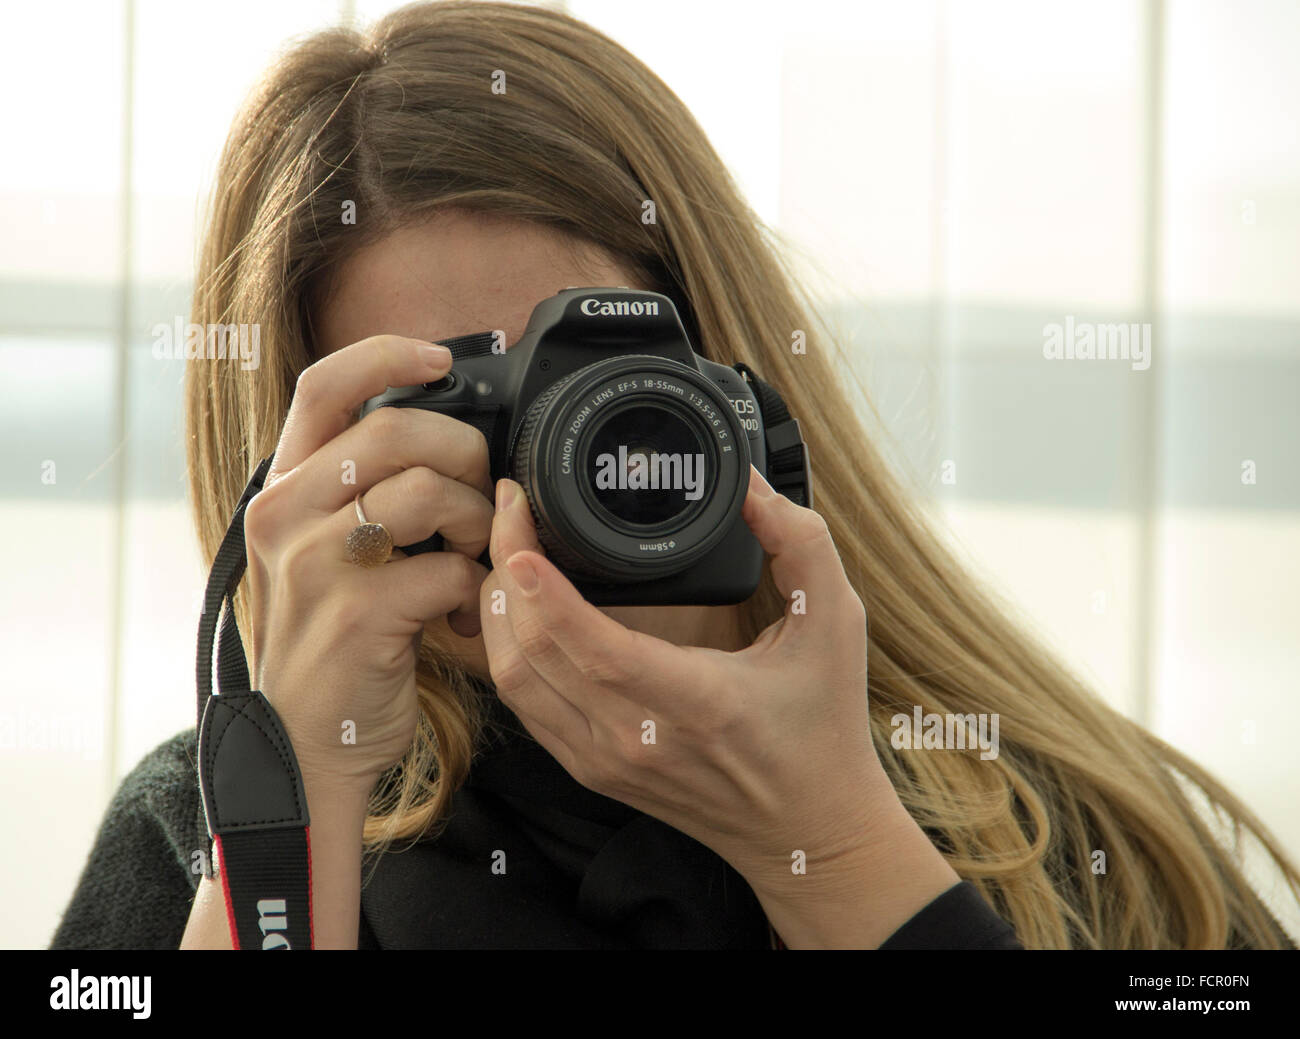 Jeune femme photographe à l'aide d'un appareil photo reflex numérique Canon Banque D'Images